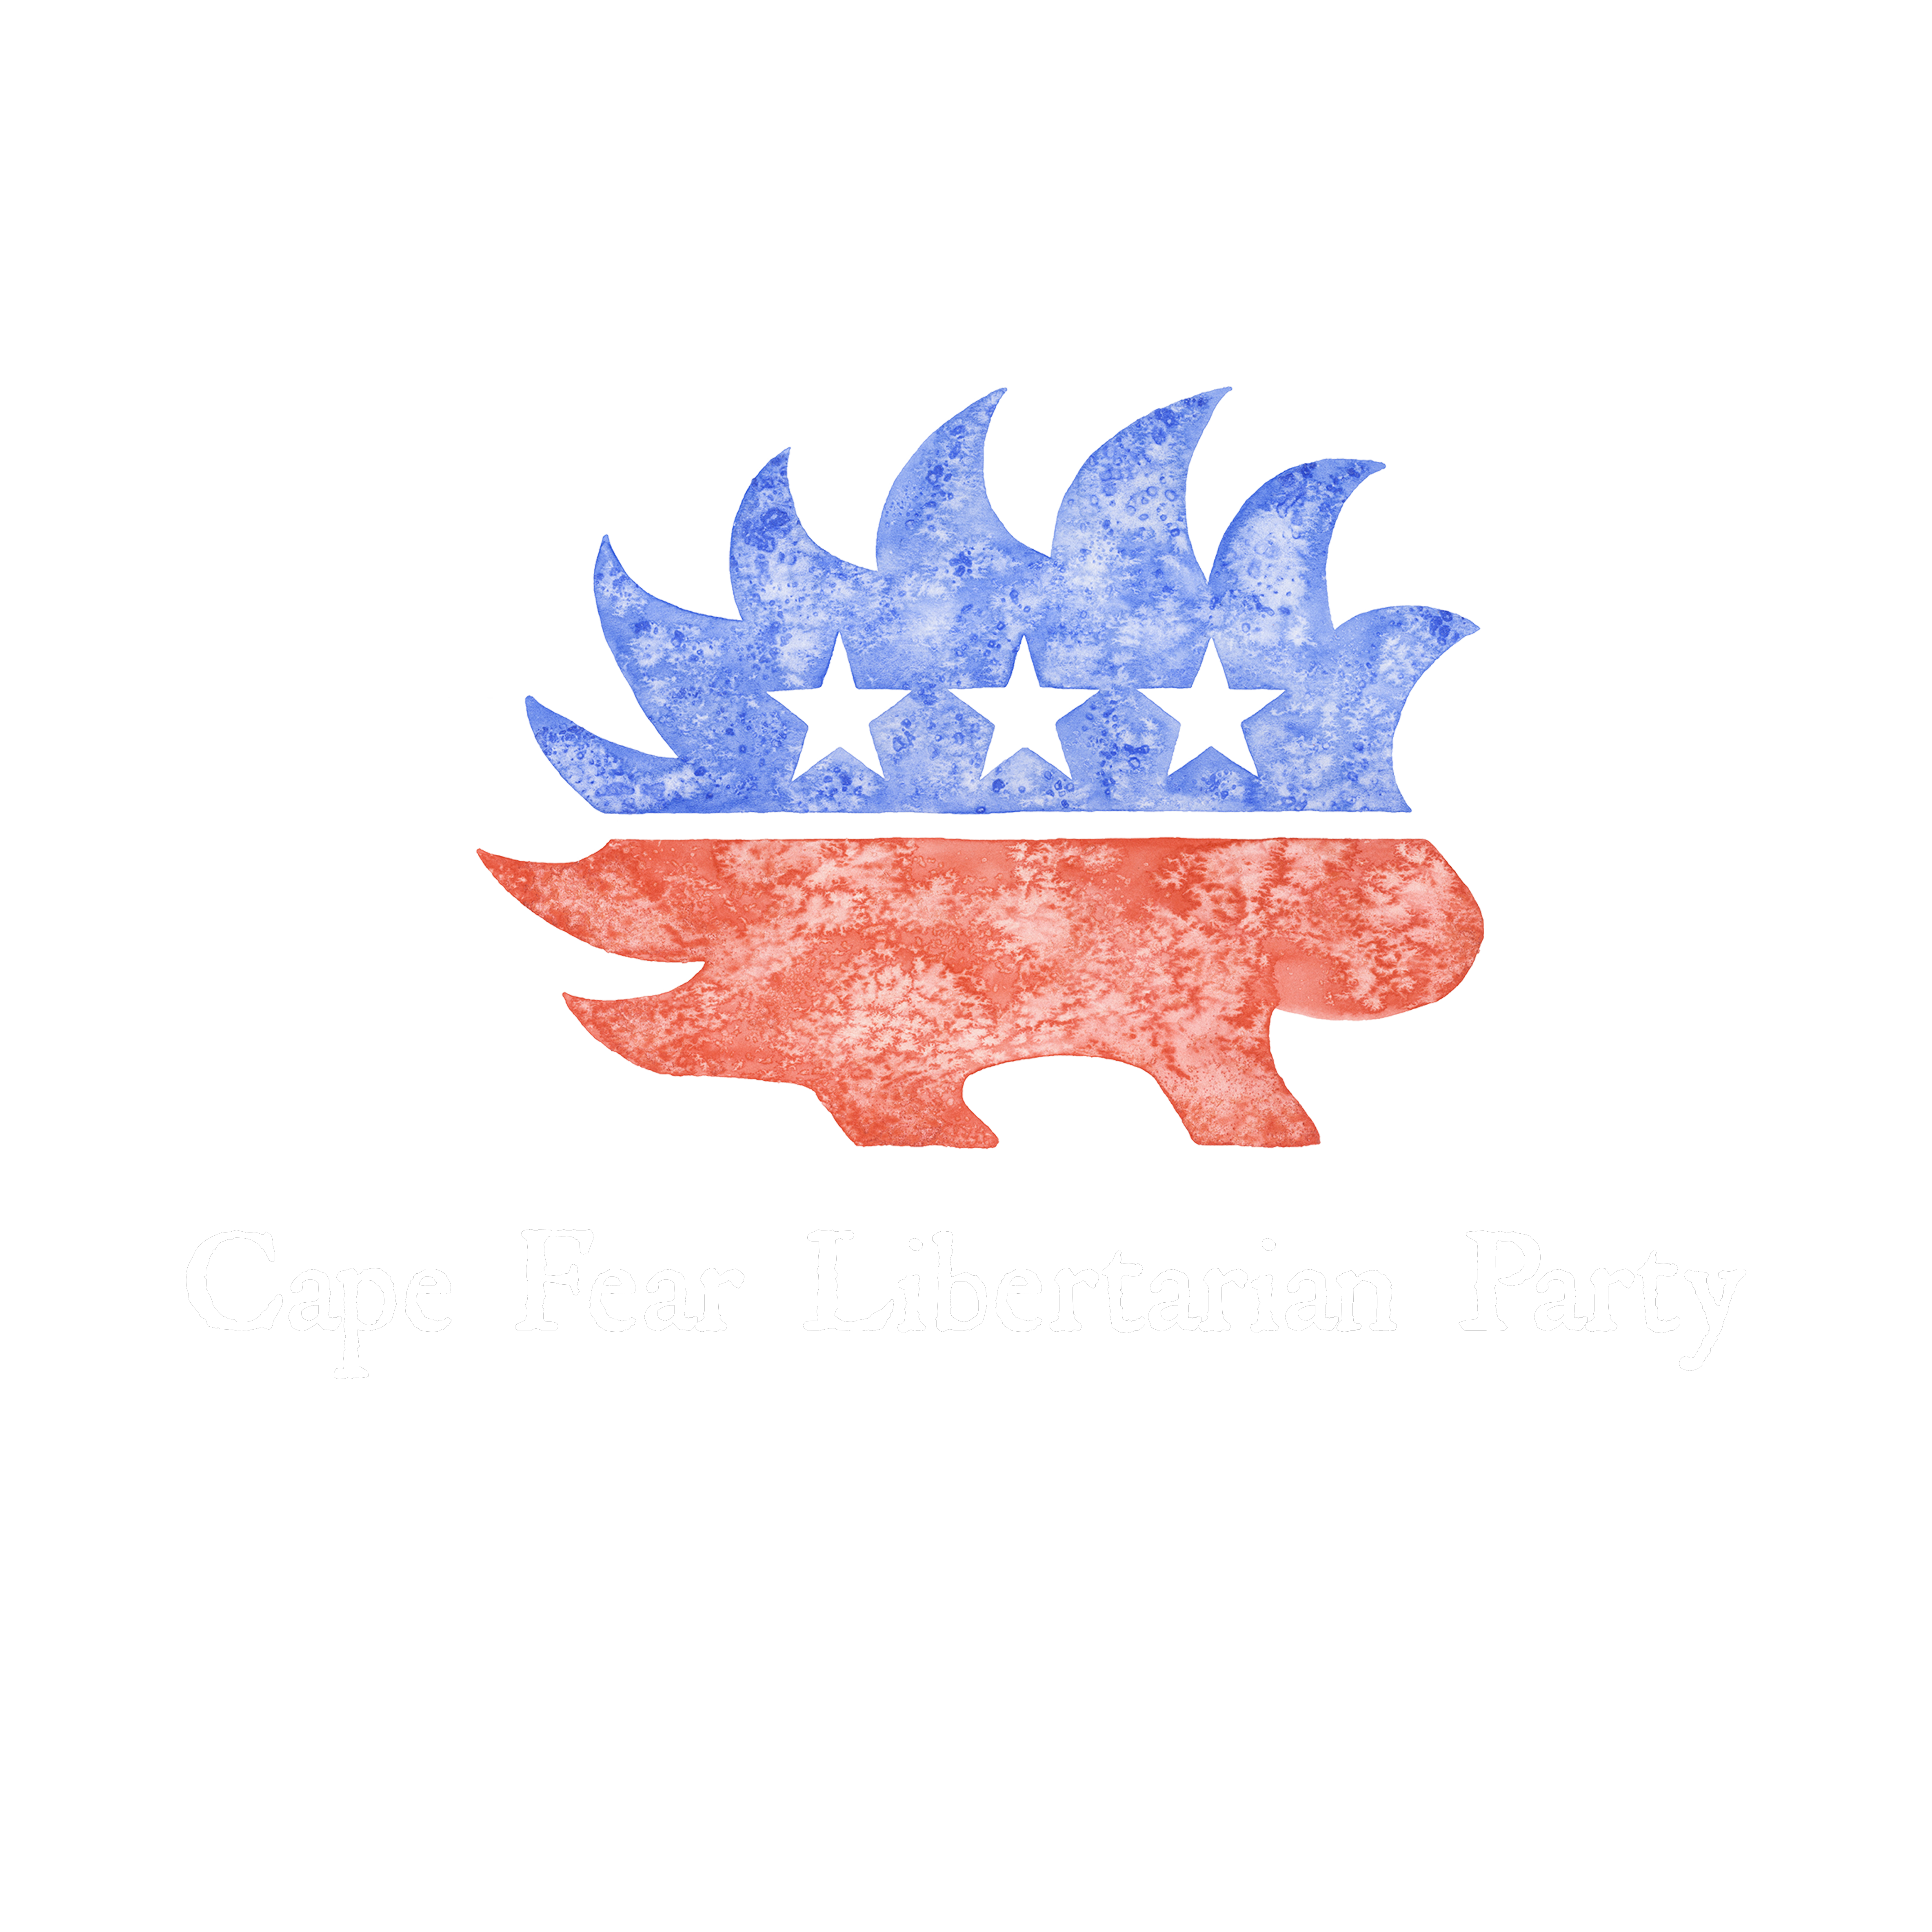 Cape Fear Libertarians